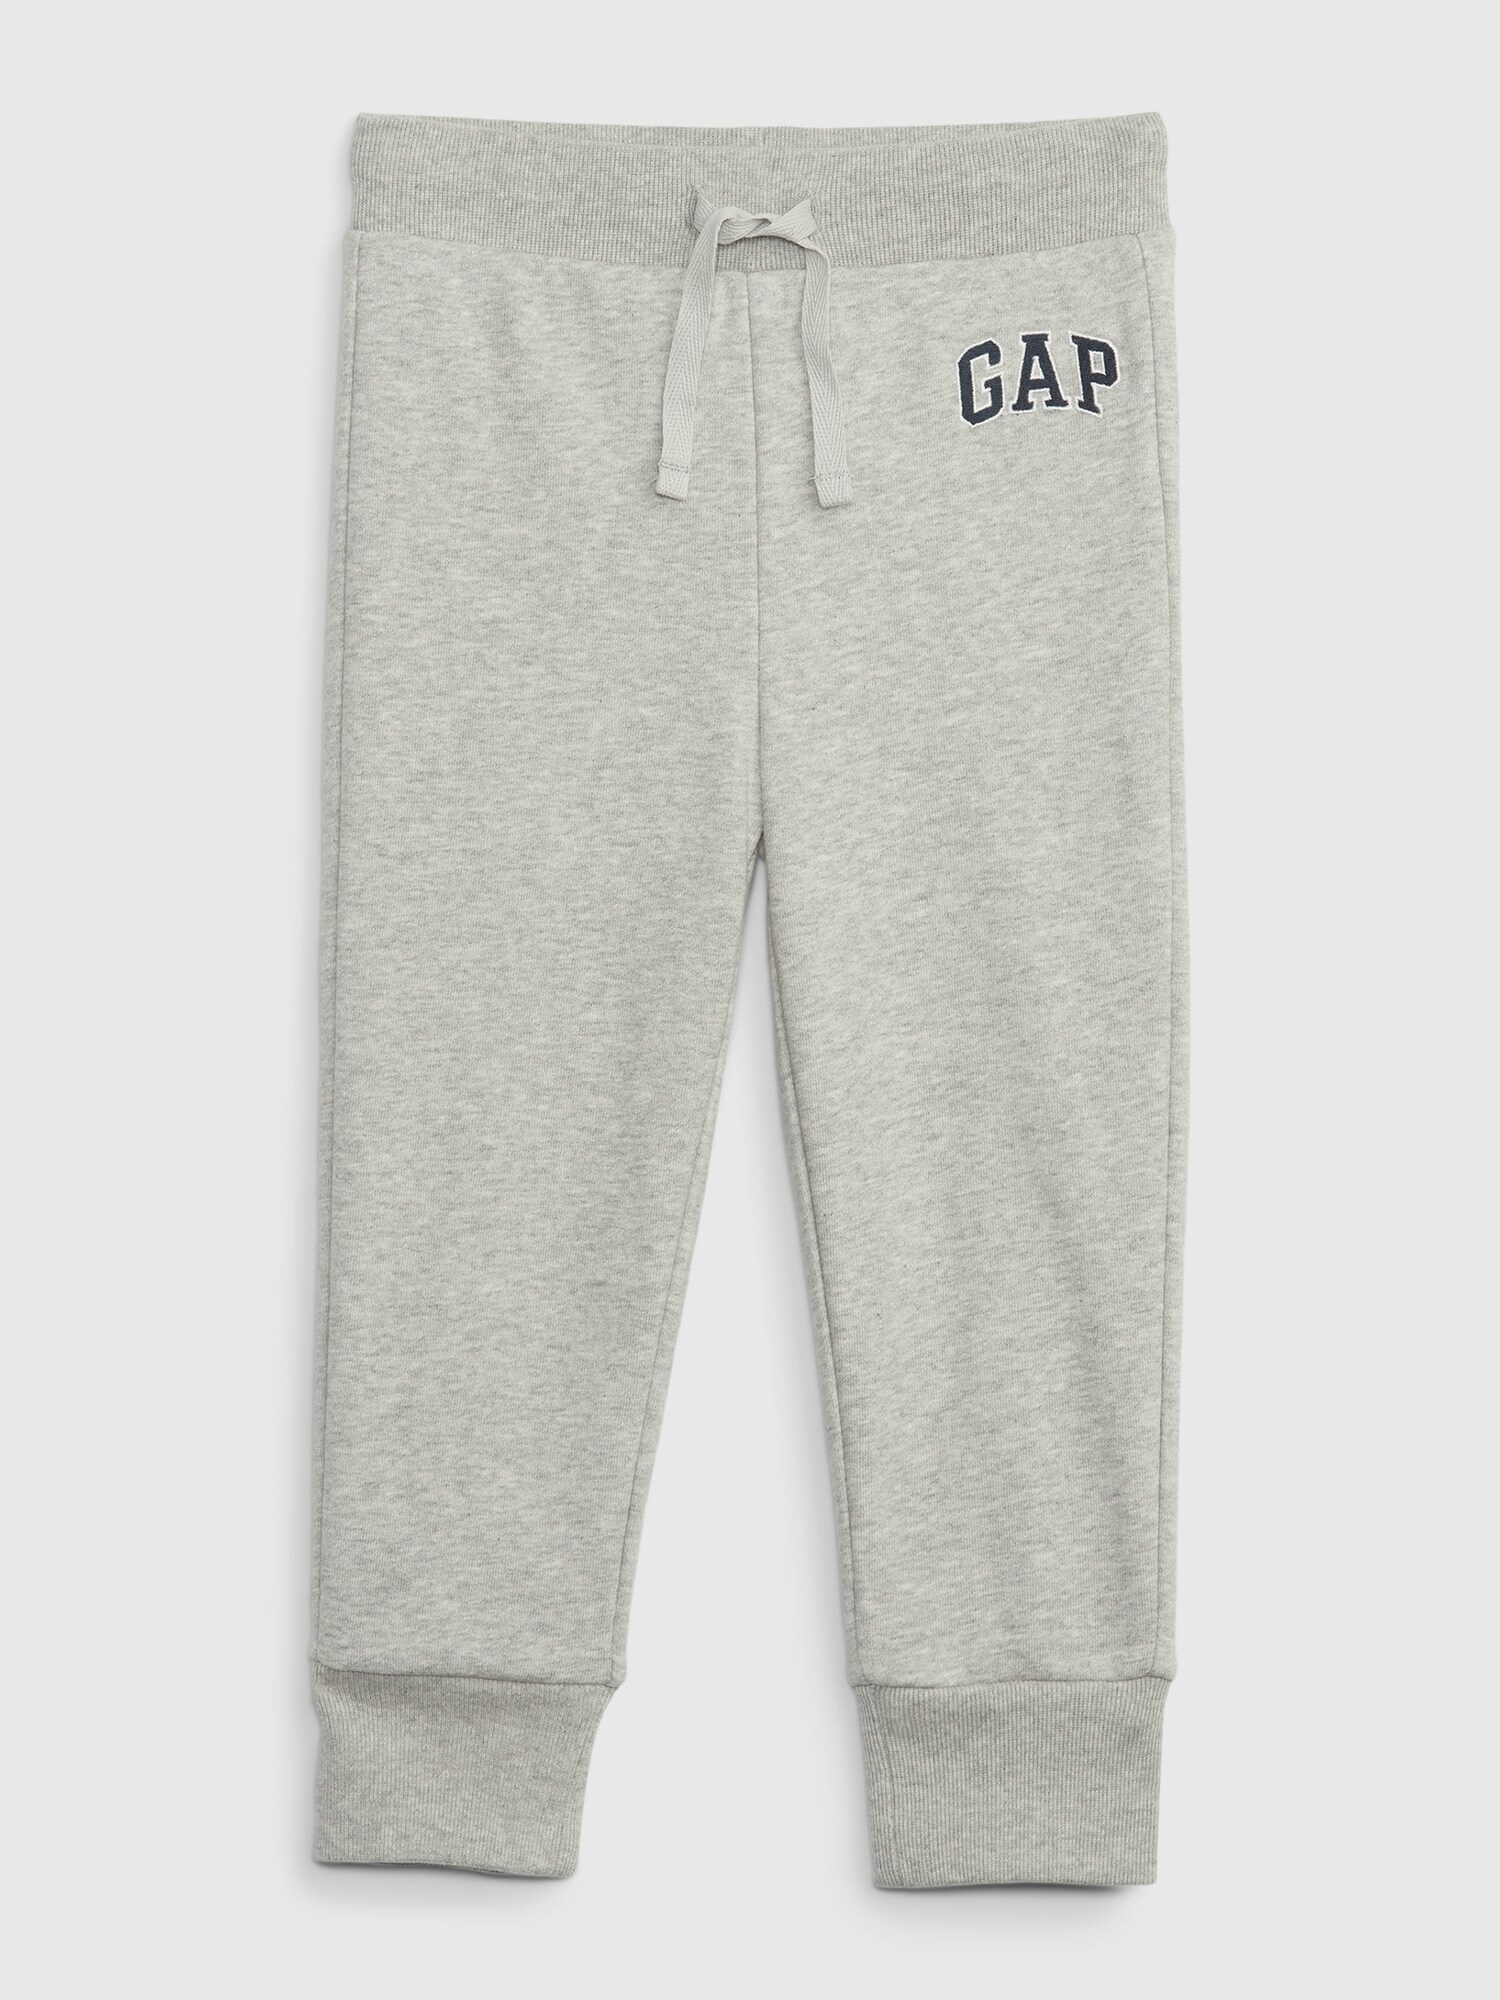 Gap公式オンラインストア babyGap GAPロゴ プルオンジョガーパンツ